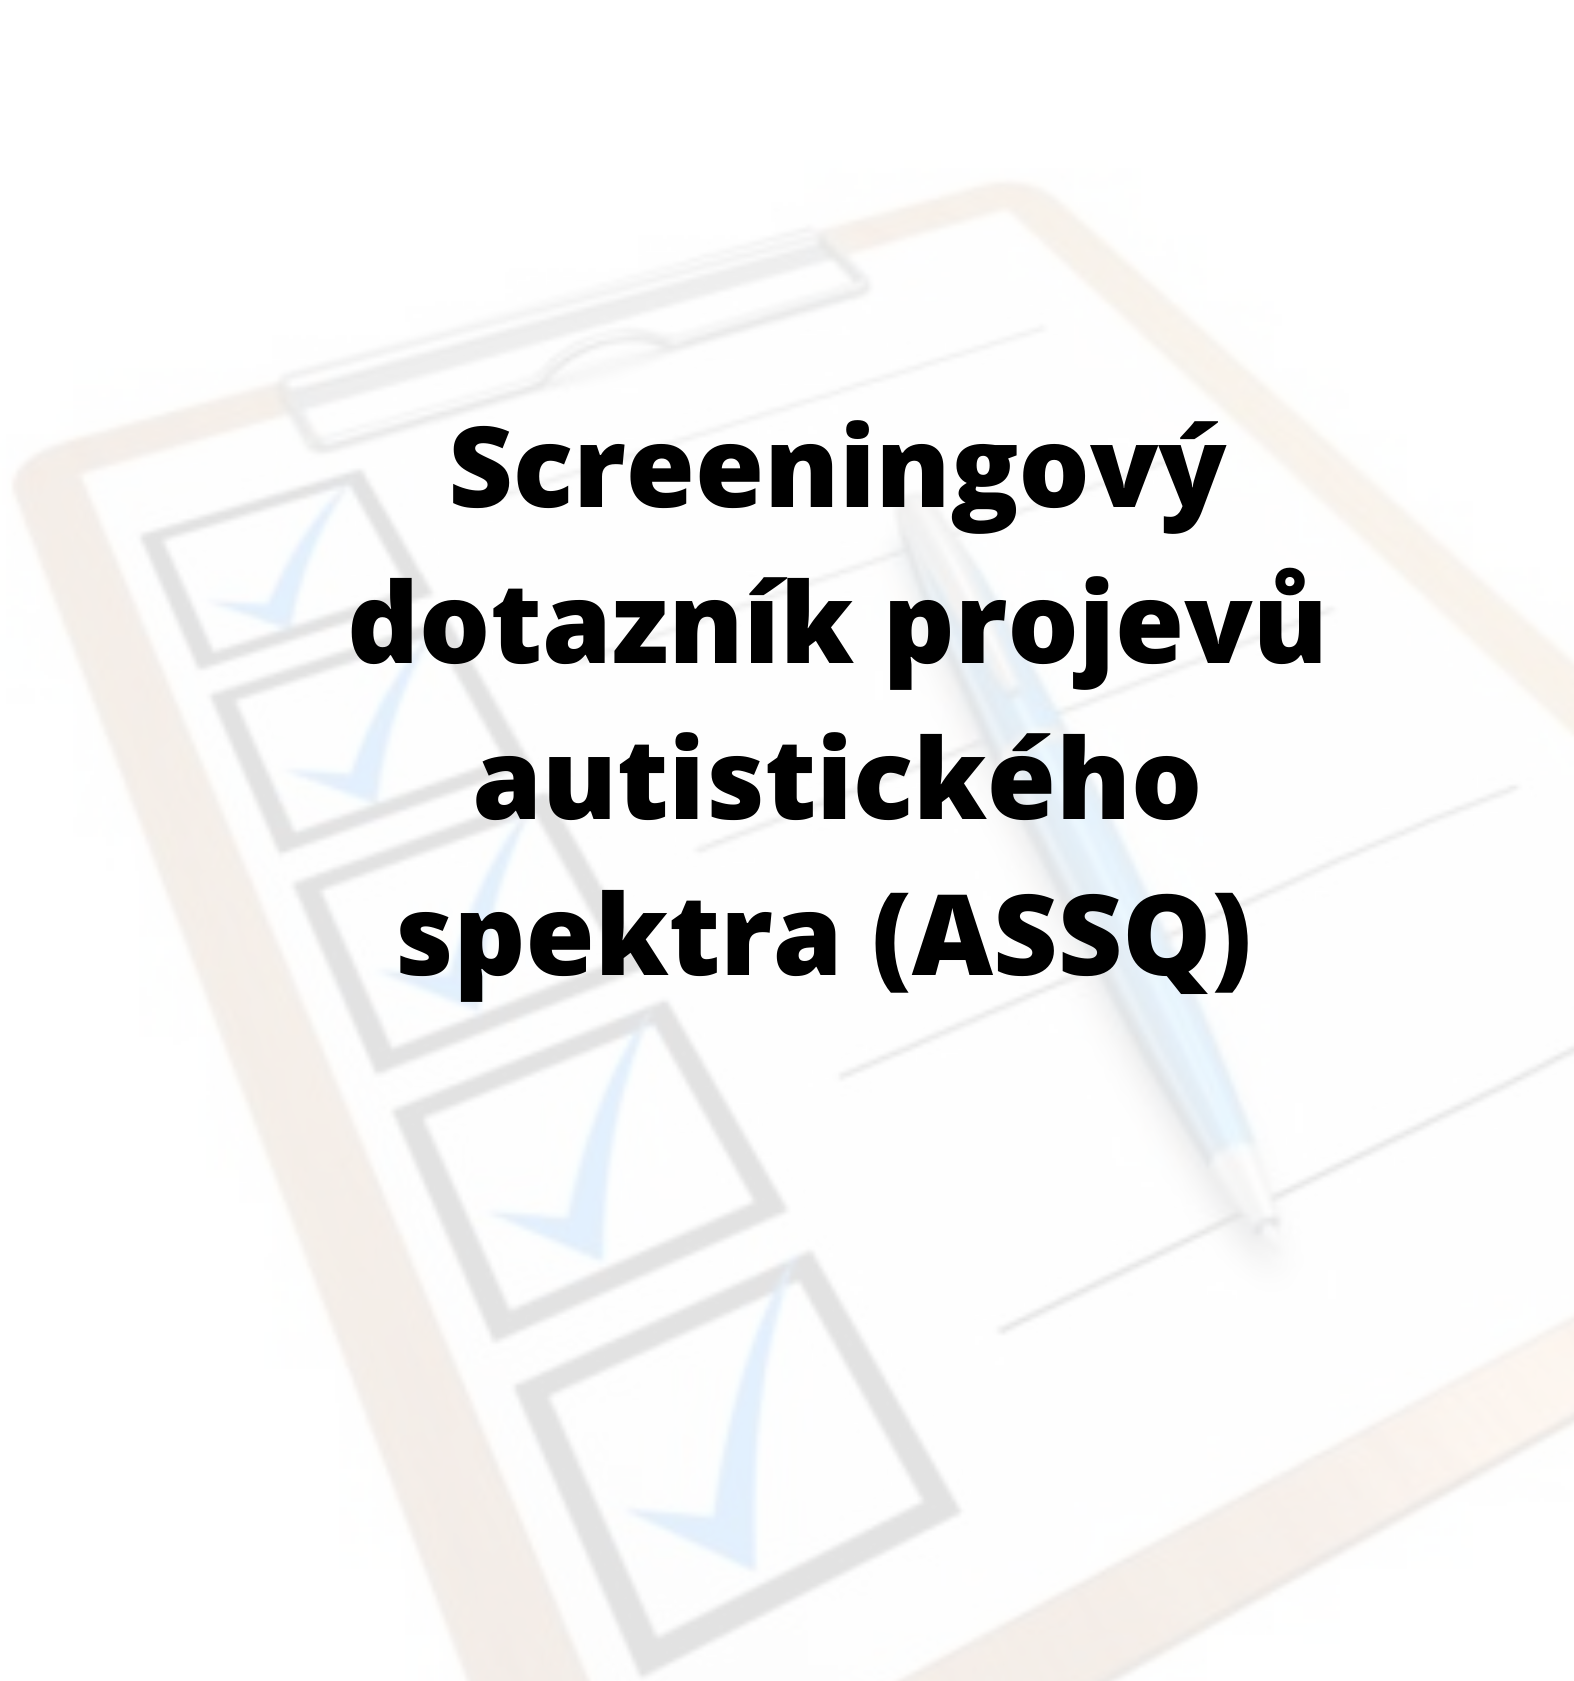 Screeningový dotazník projevů autistického spektra (ASSQ)